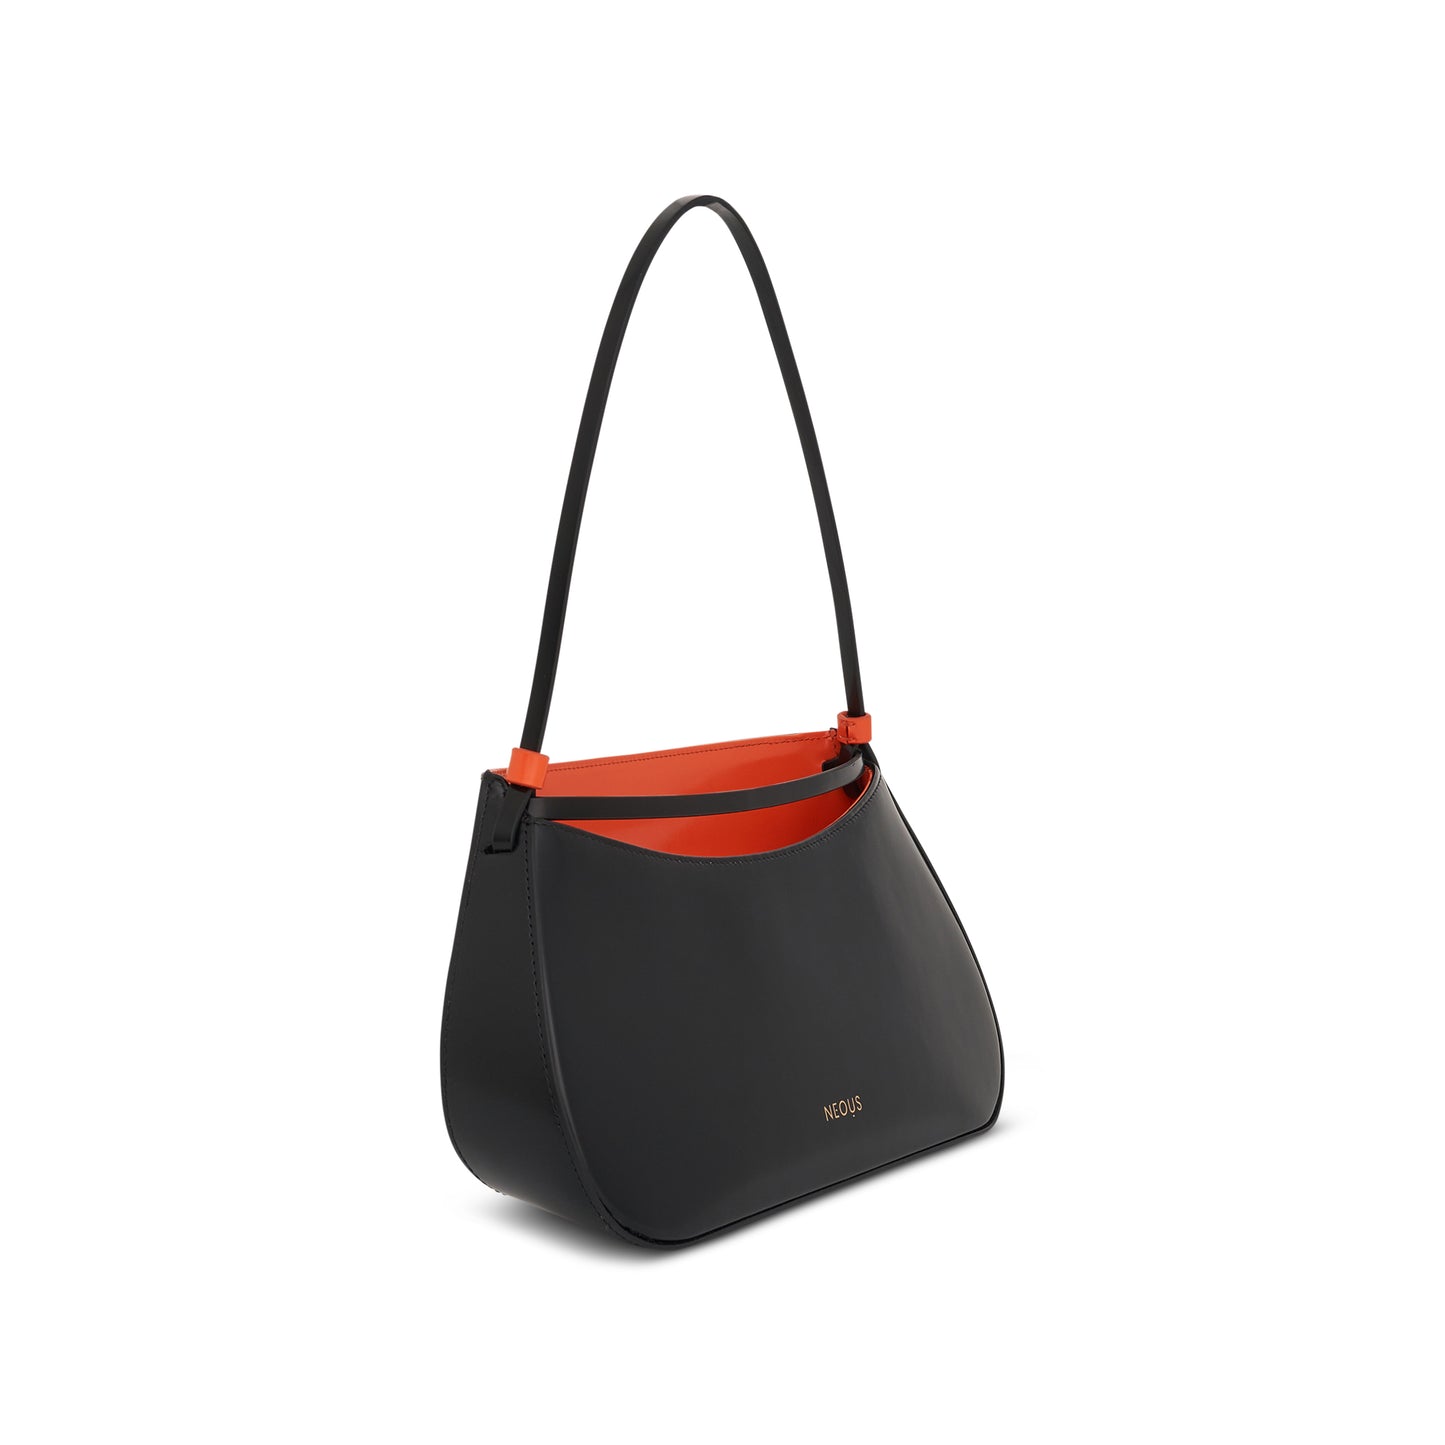 Zeta Baguette Bag in Black/Orange